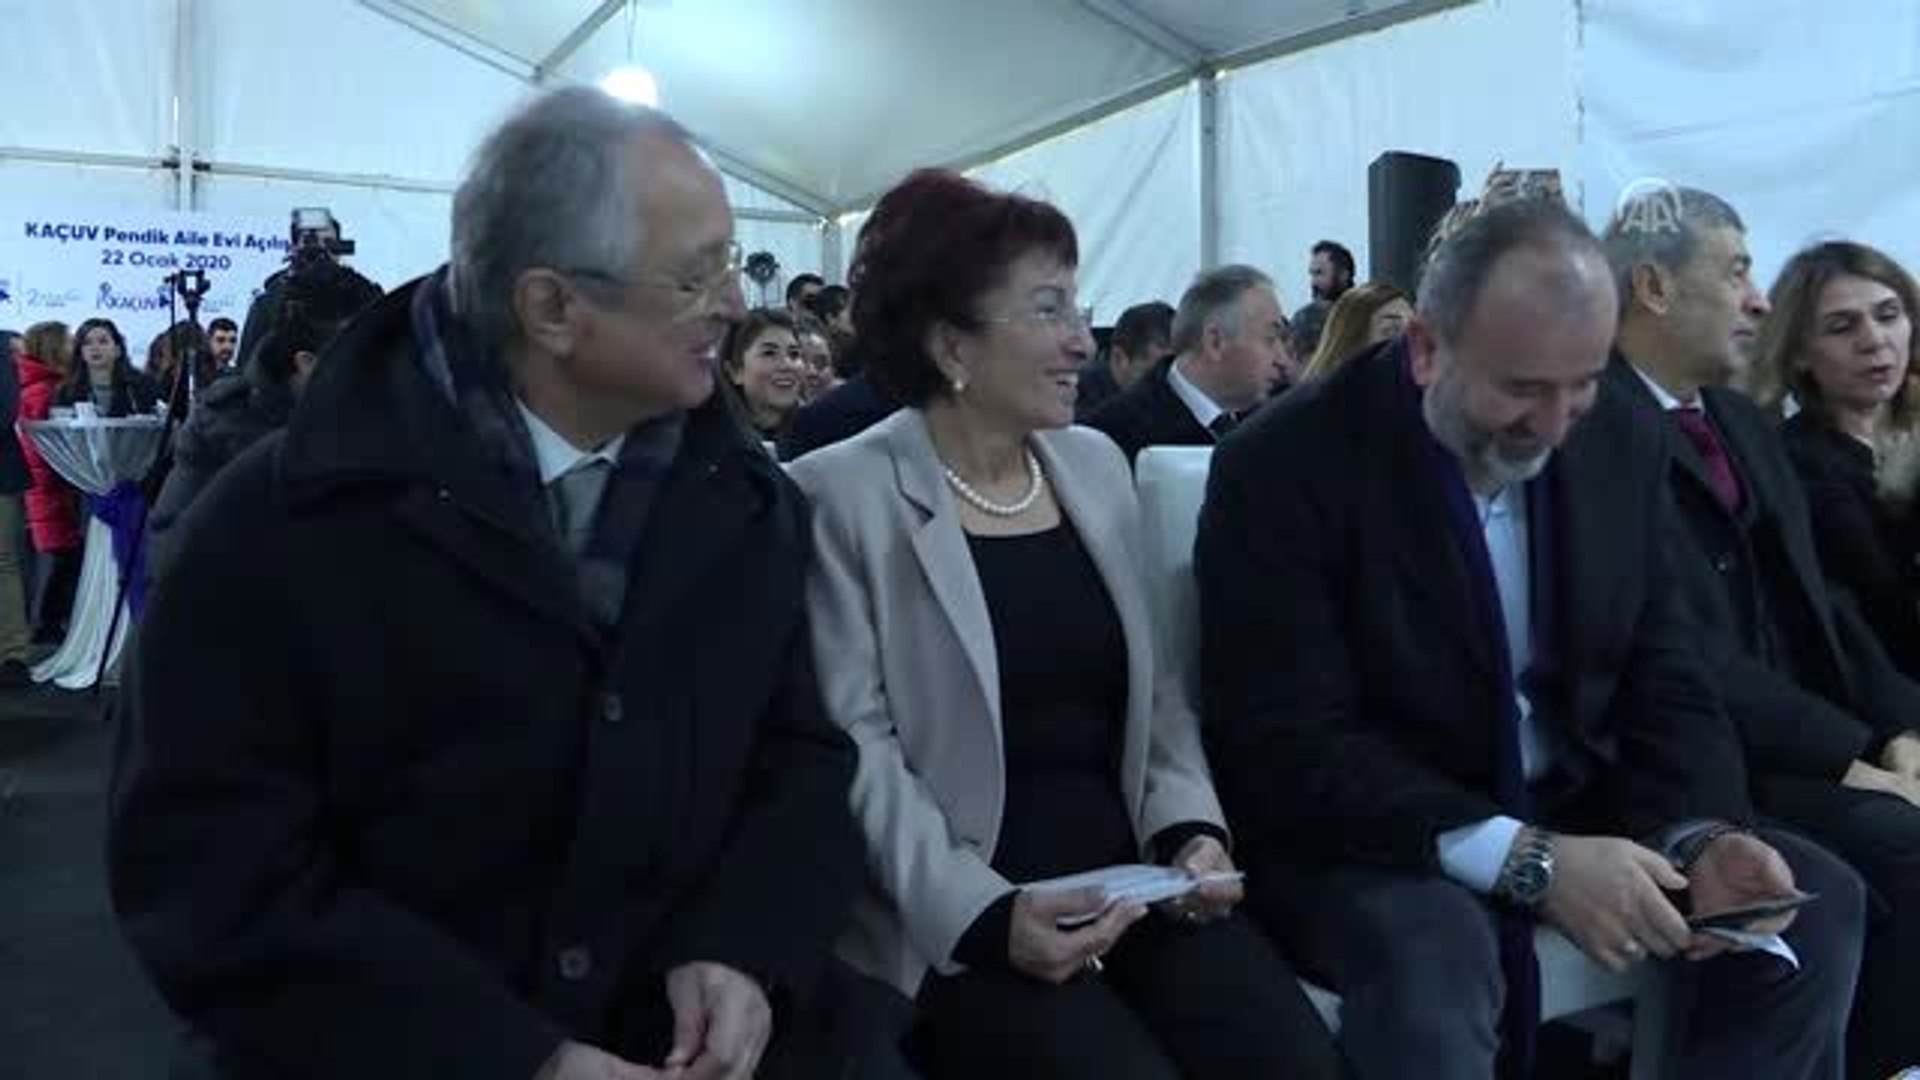 KAÇUV'un 2. Aile Evi Pendik'te açıldı - Dailymotion Video